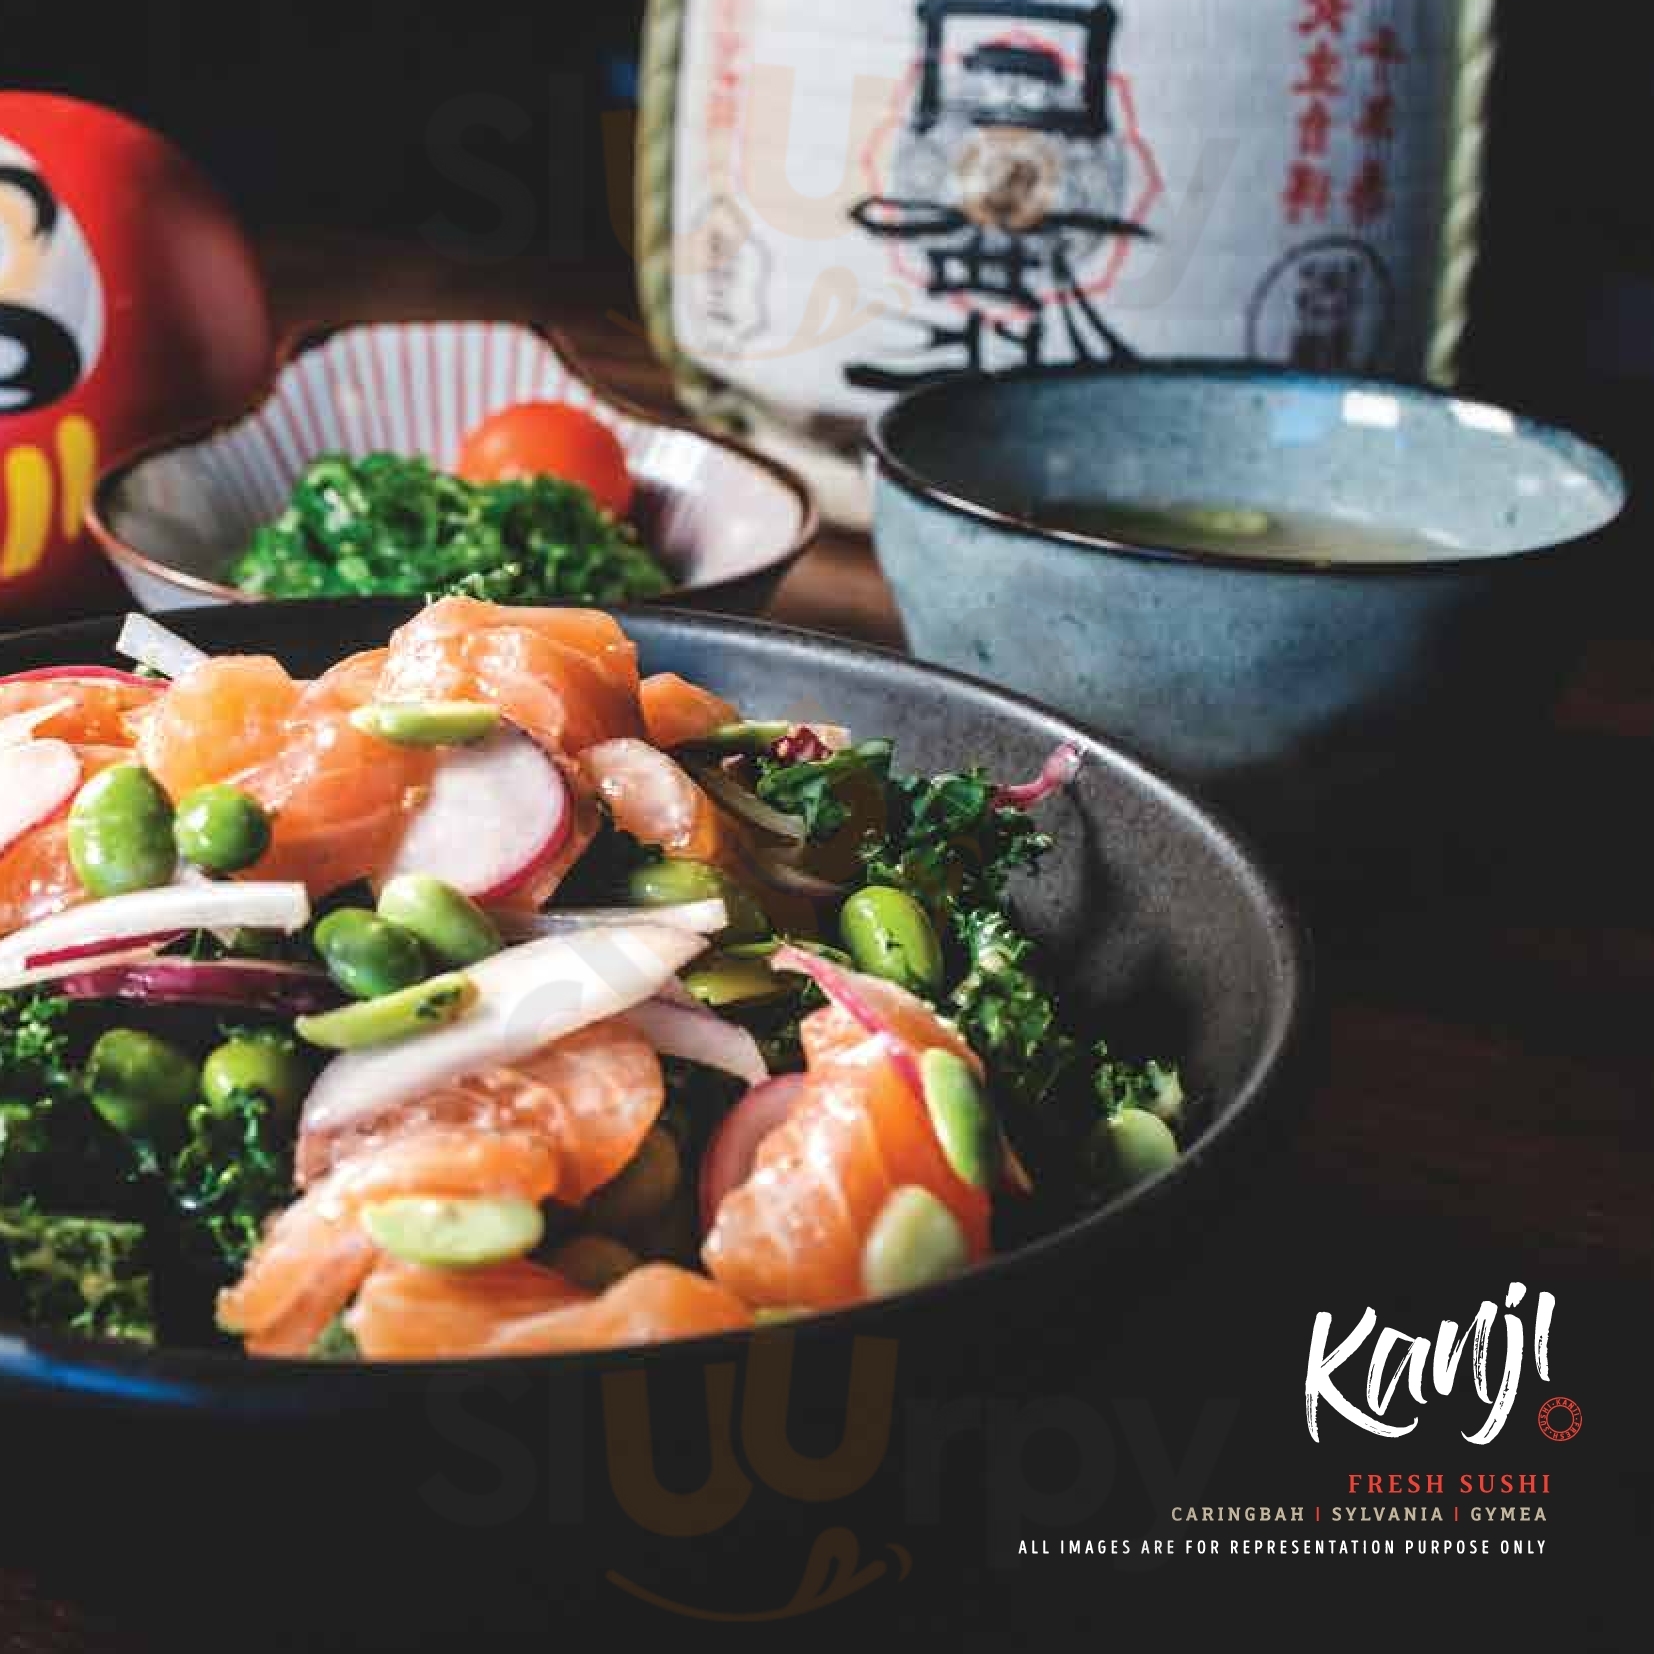 Kanji Fresh Sushi Caringbah Menu - 1